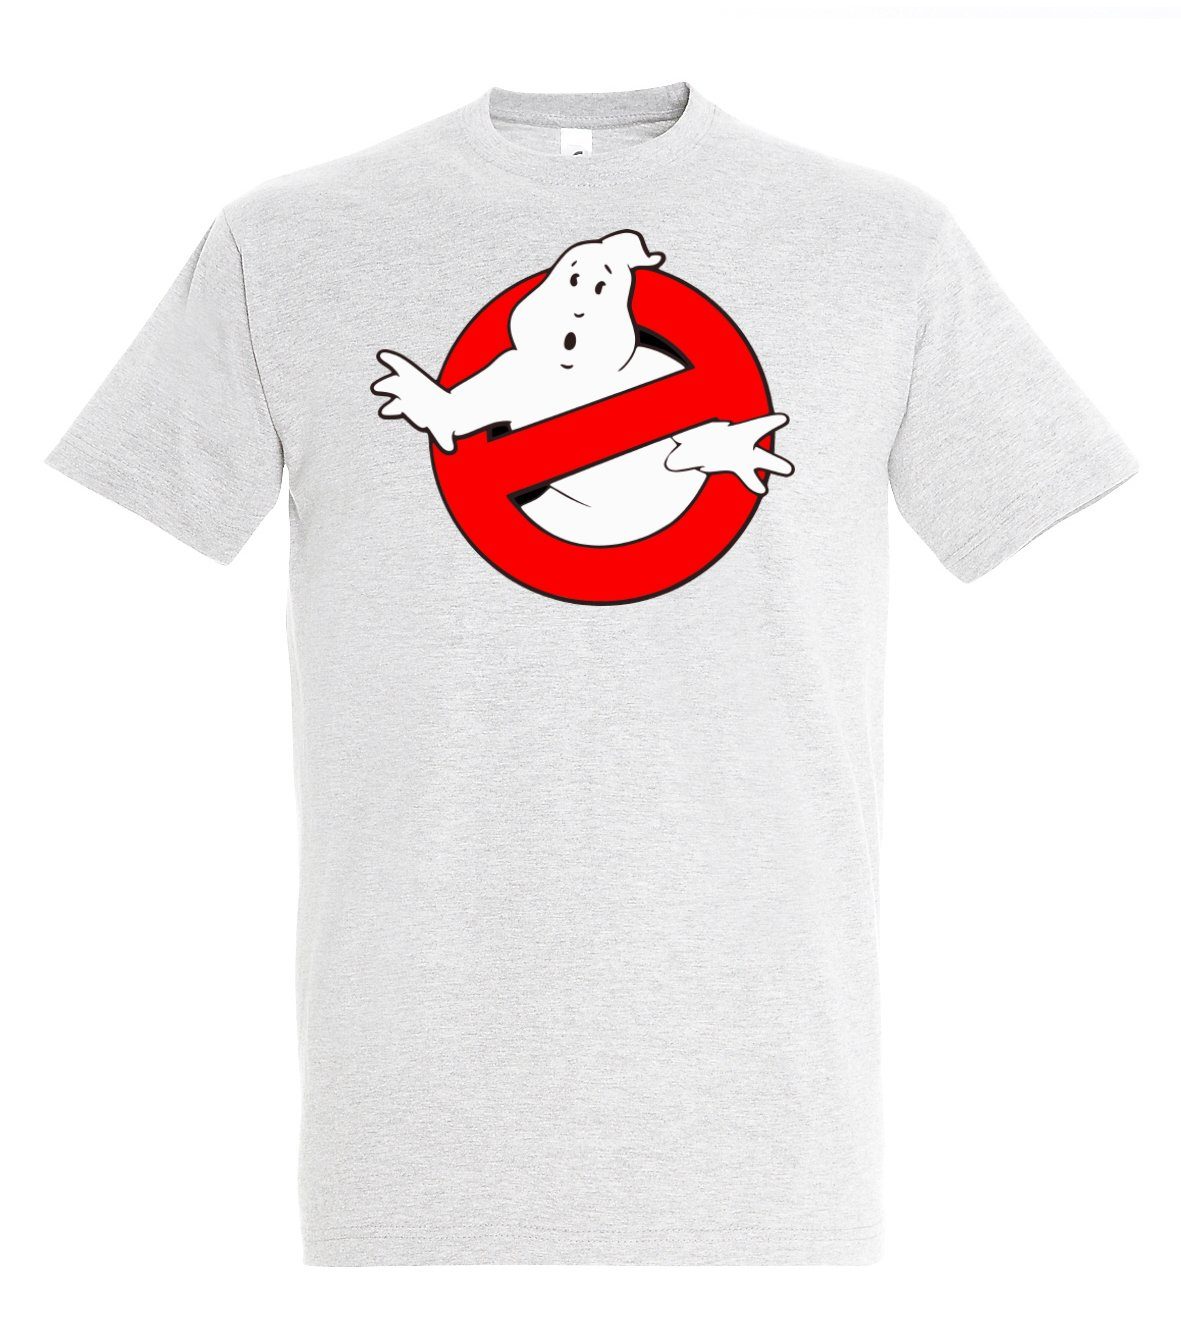 Herren T-Shirt mit T-Shirt Designz Ghostbusters Frontprint coolen Youth Weiß